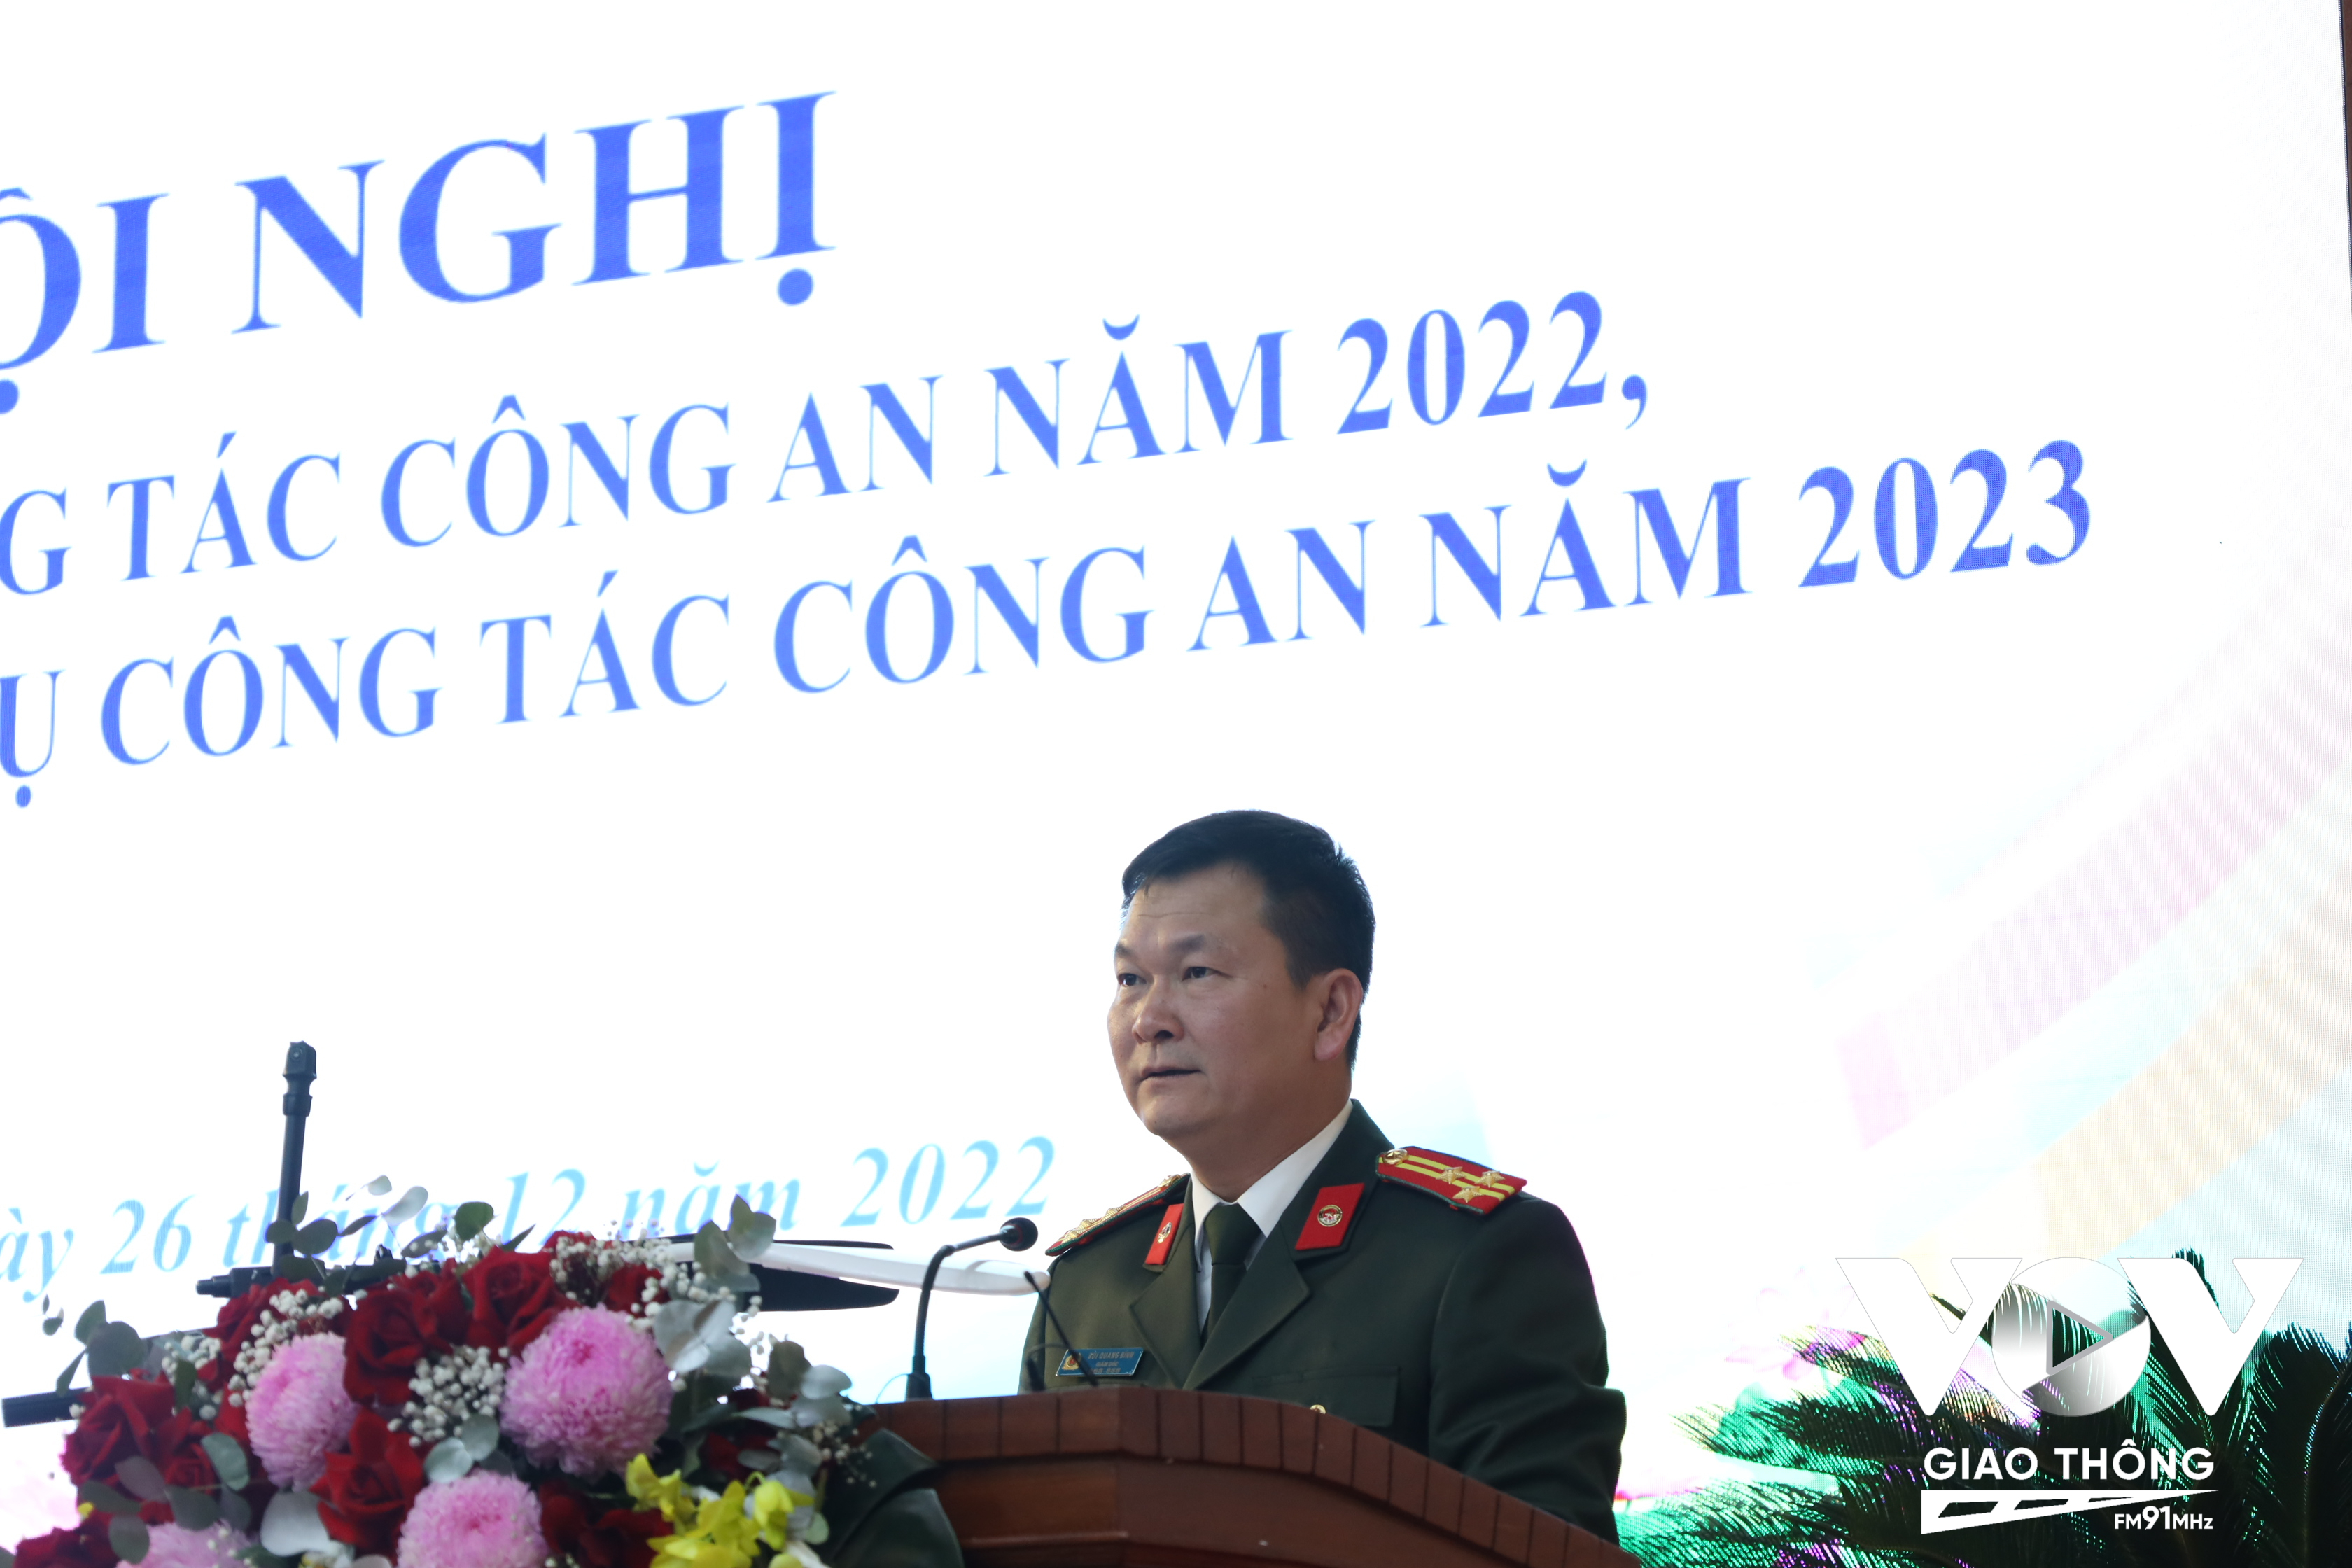 Thượng tá Bùi Quang Bình, Giám đốc Công an tỉnh Hải Dương phát biểu tại hội nghị